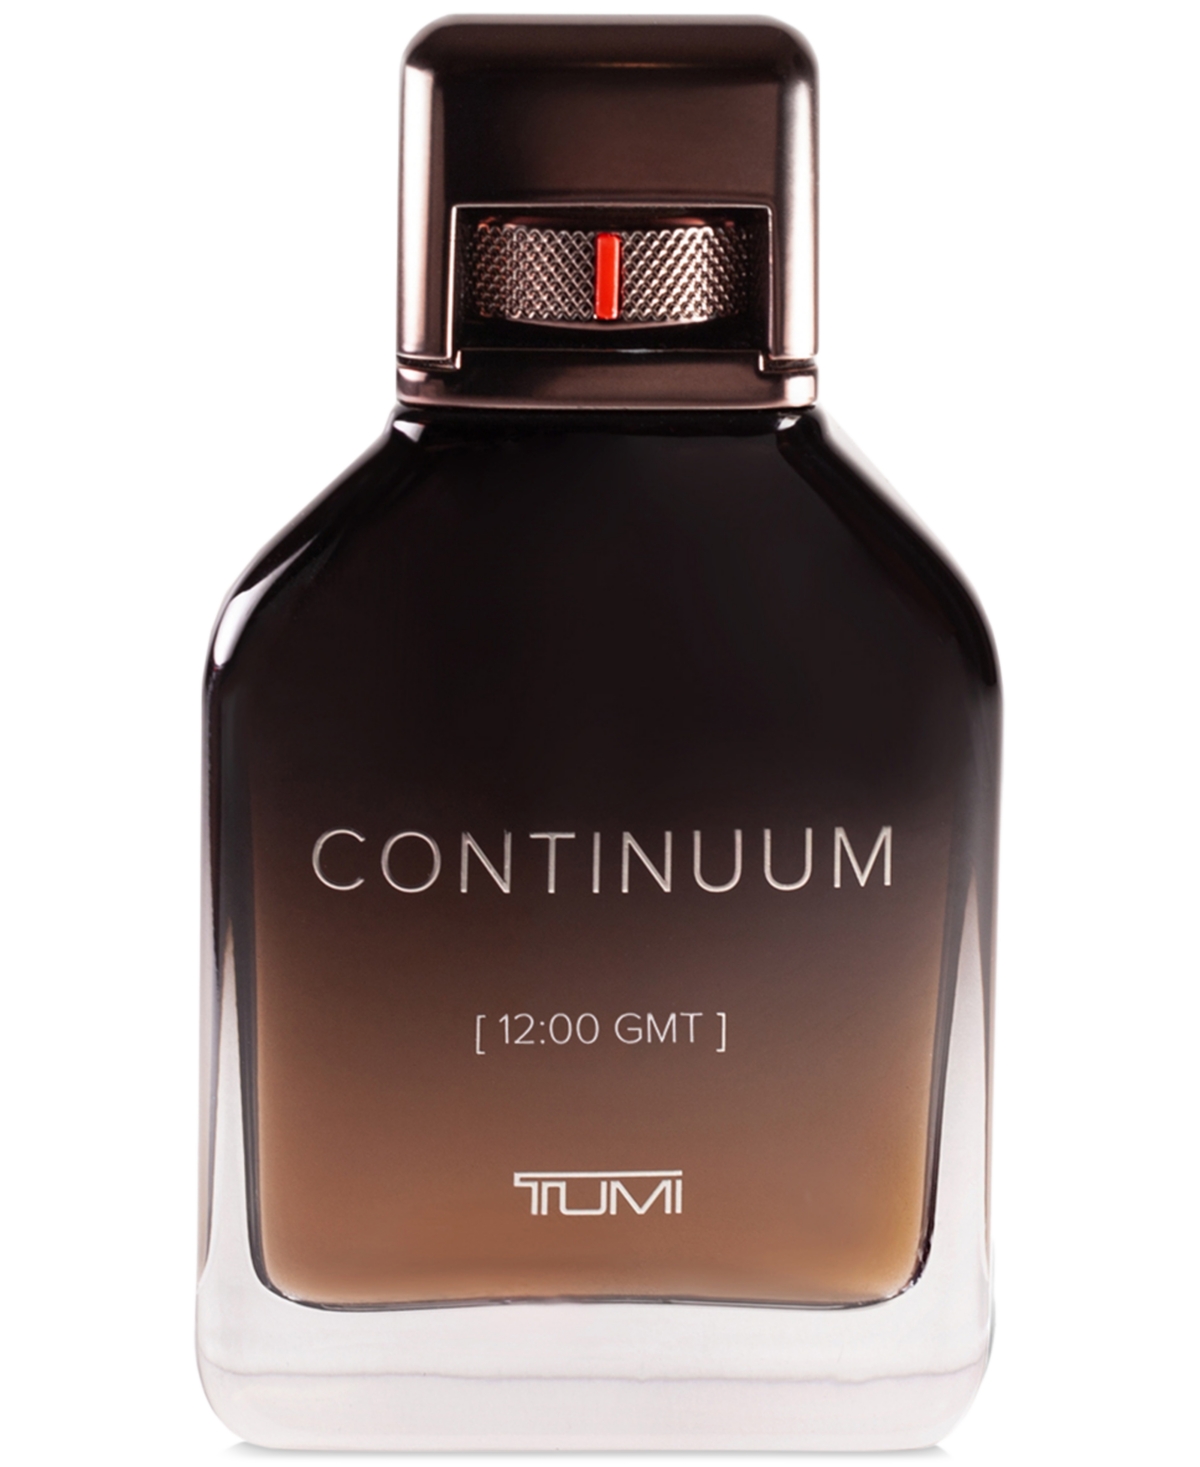 Continuum [12:00 Gmt] Tumi Eau de Parfum Spray, 3.4 oz.